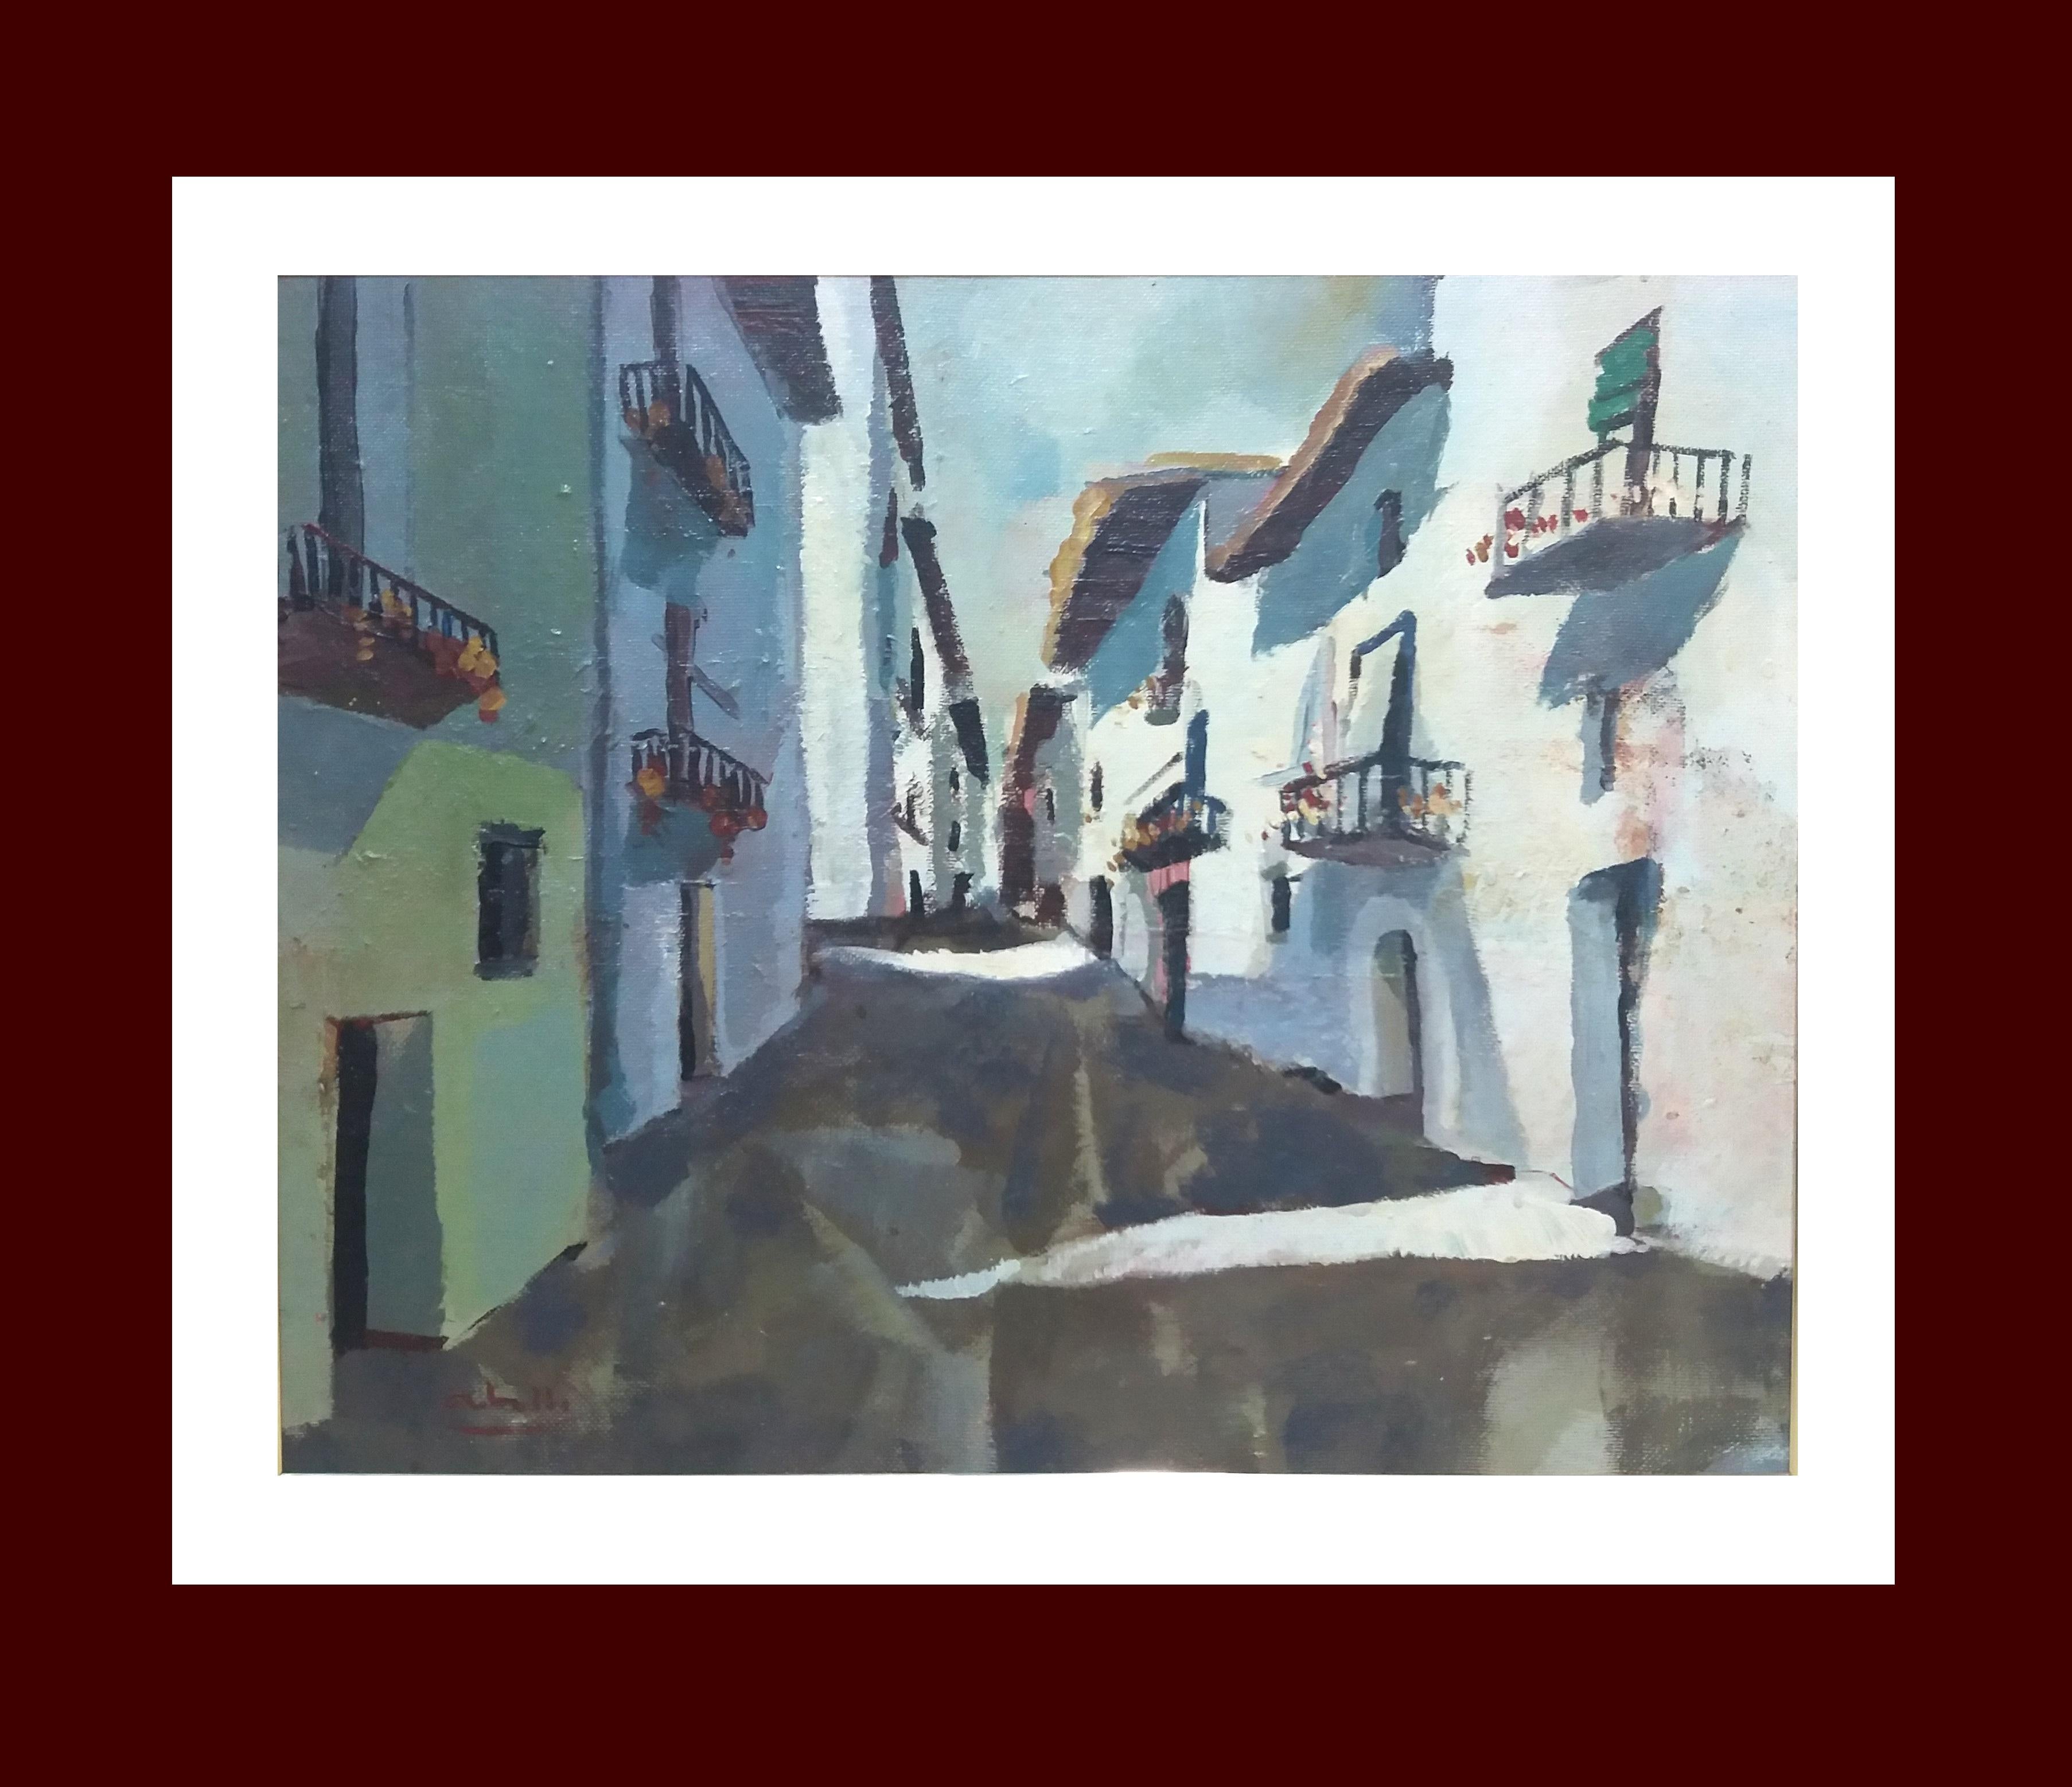  Abella   Town Street Original kubistisches Landschaftsgemälde in Acryl